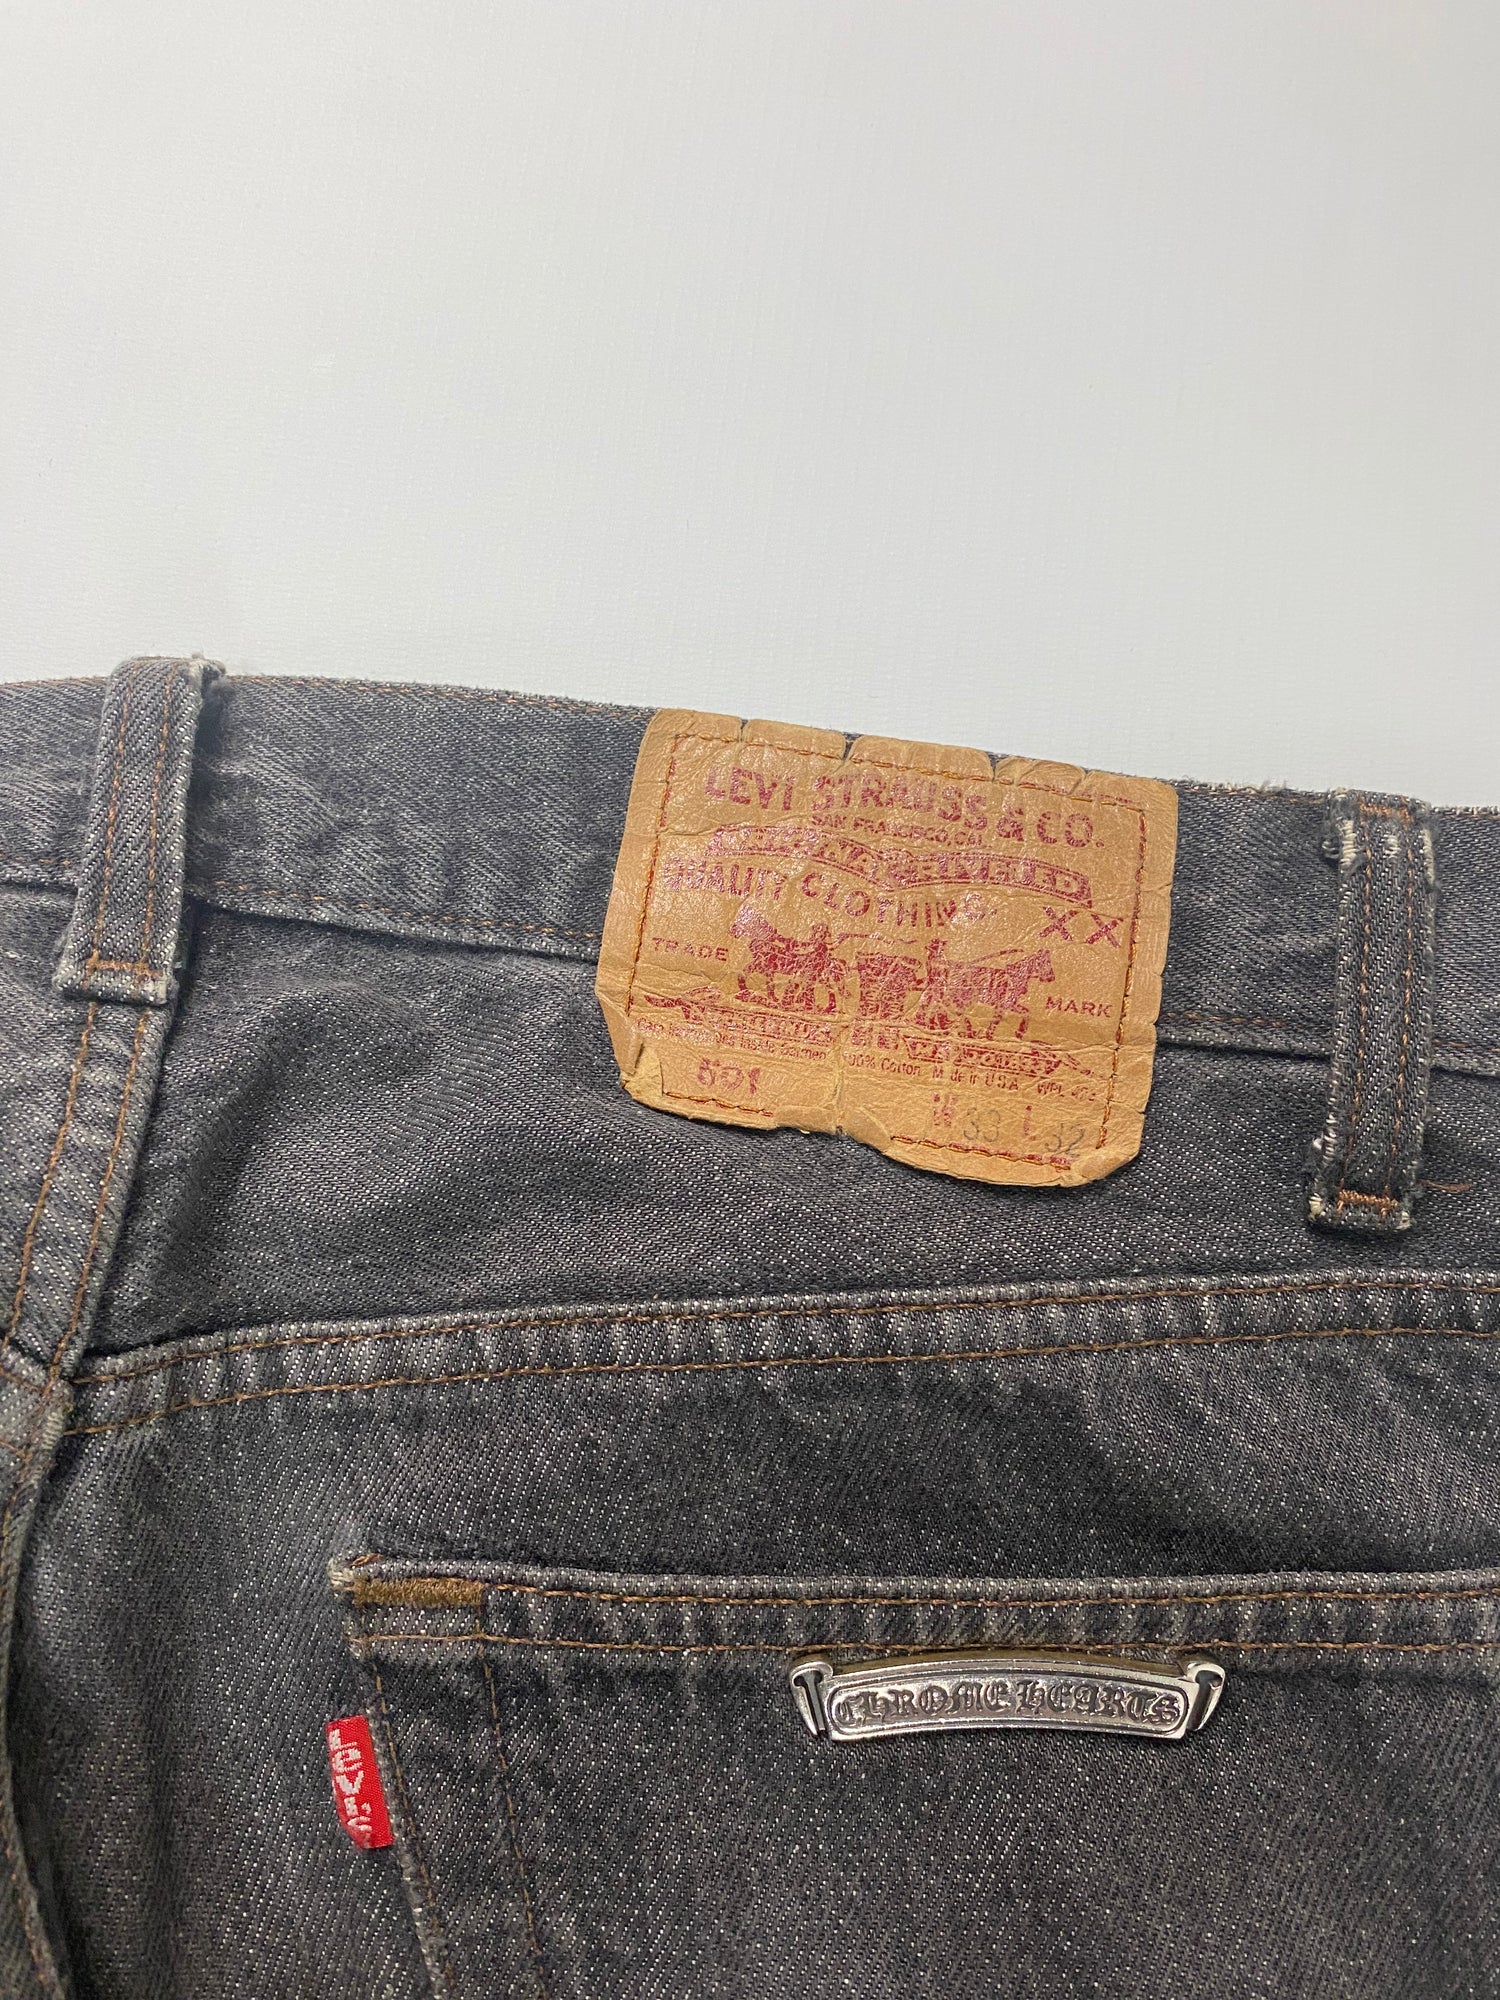 Chrome Hearts Vintage Levi's Jeans Black